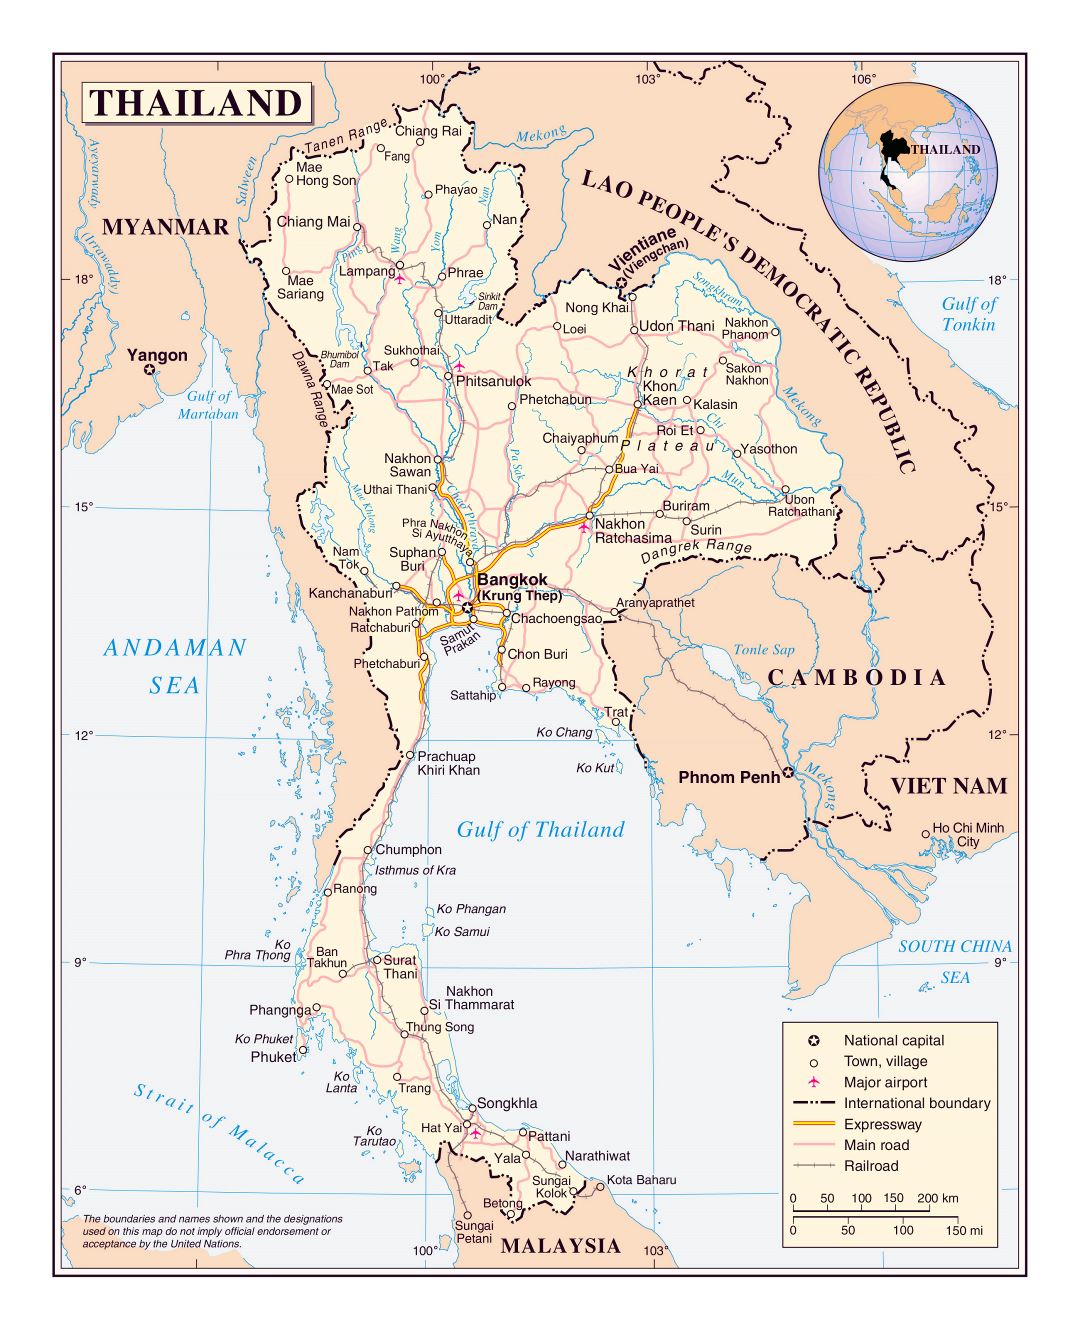 Grande detallado mapa político de Tailandia con carreteras, ferrocarriles, principales ciudades y aeropuertos